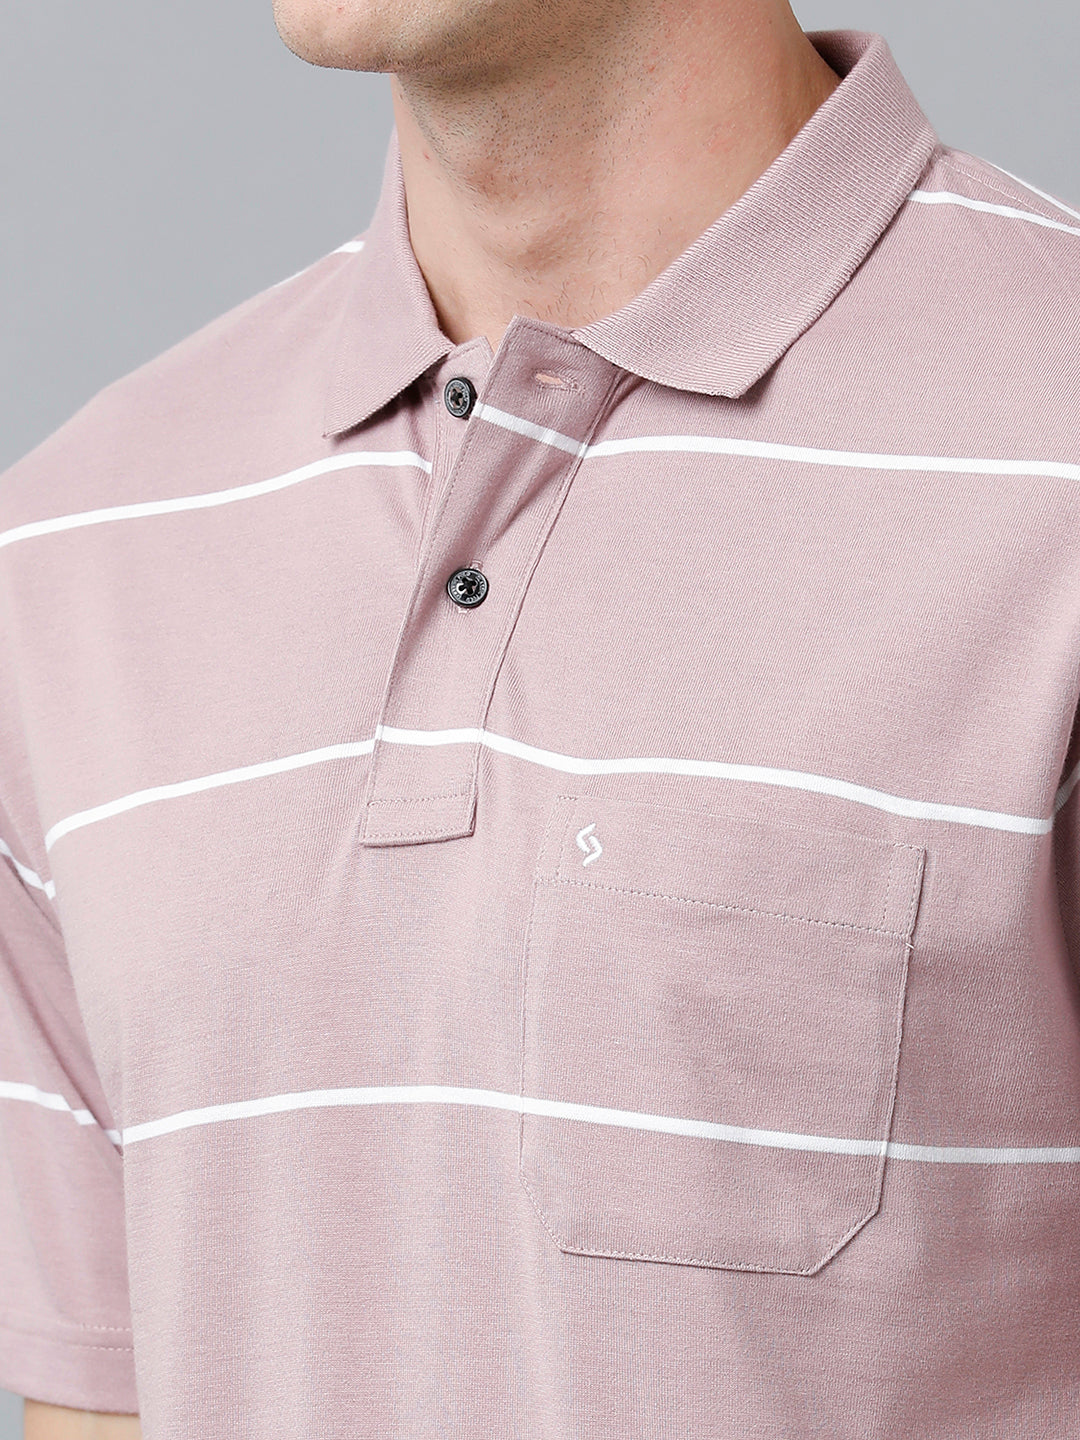 Classic Polo Men's Cotton Blend Half Sleeve Striped Authentic Fit Polo Neck Grape Violet Color T-Shirt | Avon - 518 B